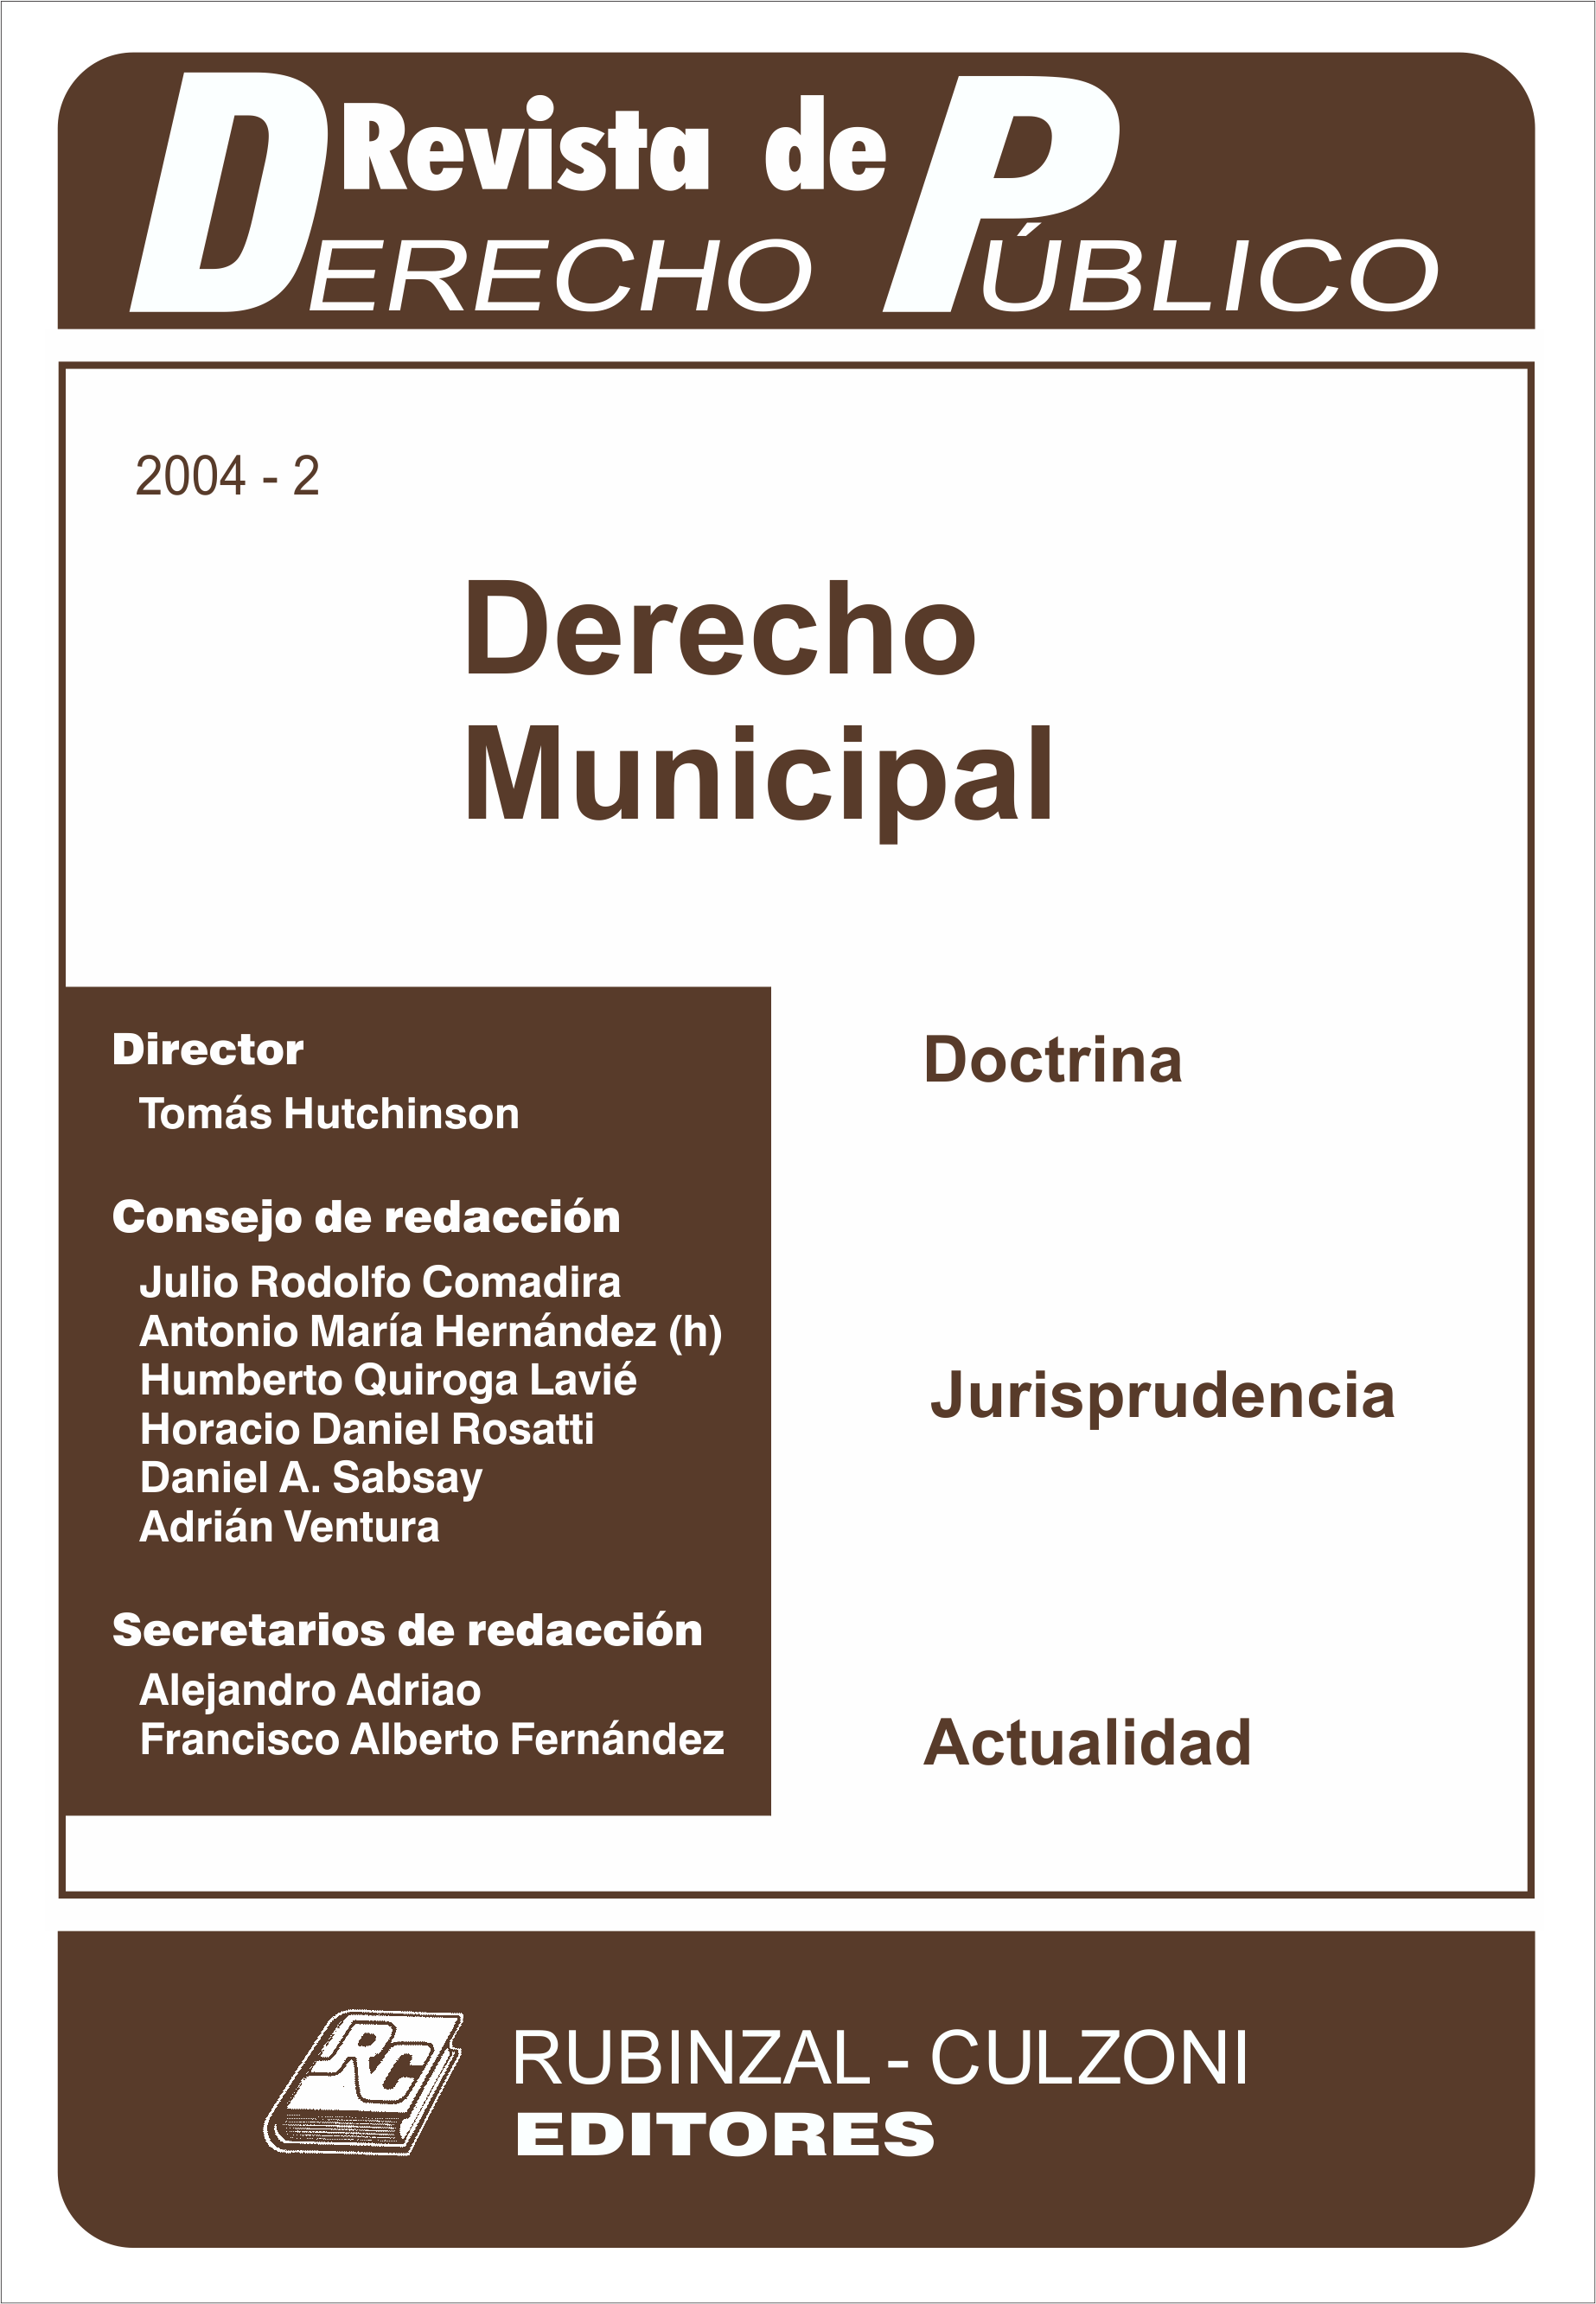 Revista de Derecho Público - Derecho Municipal